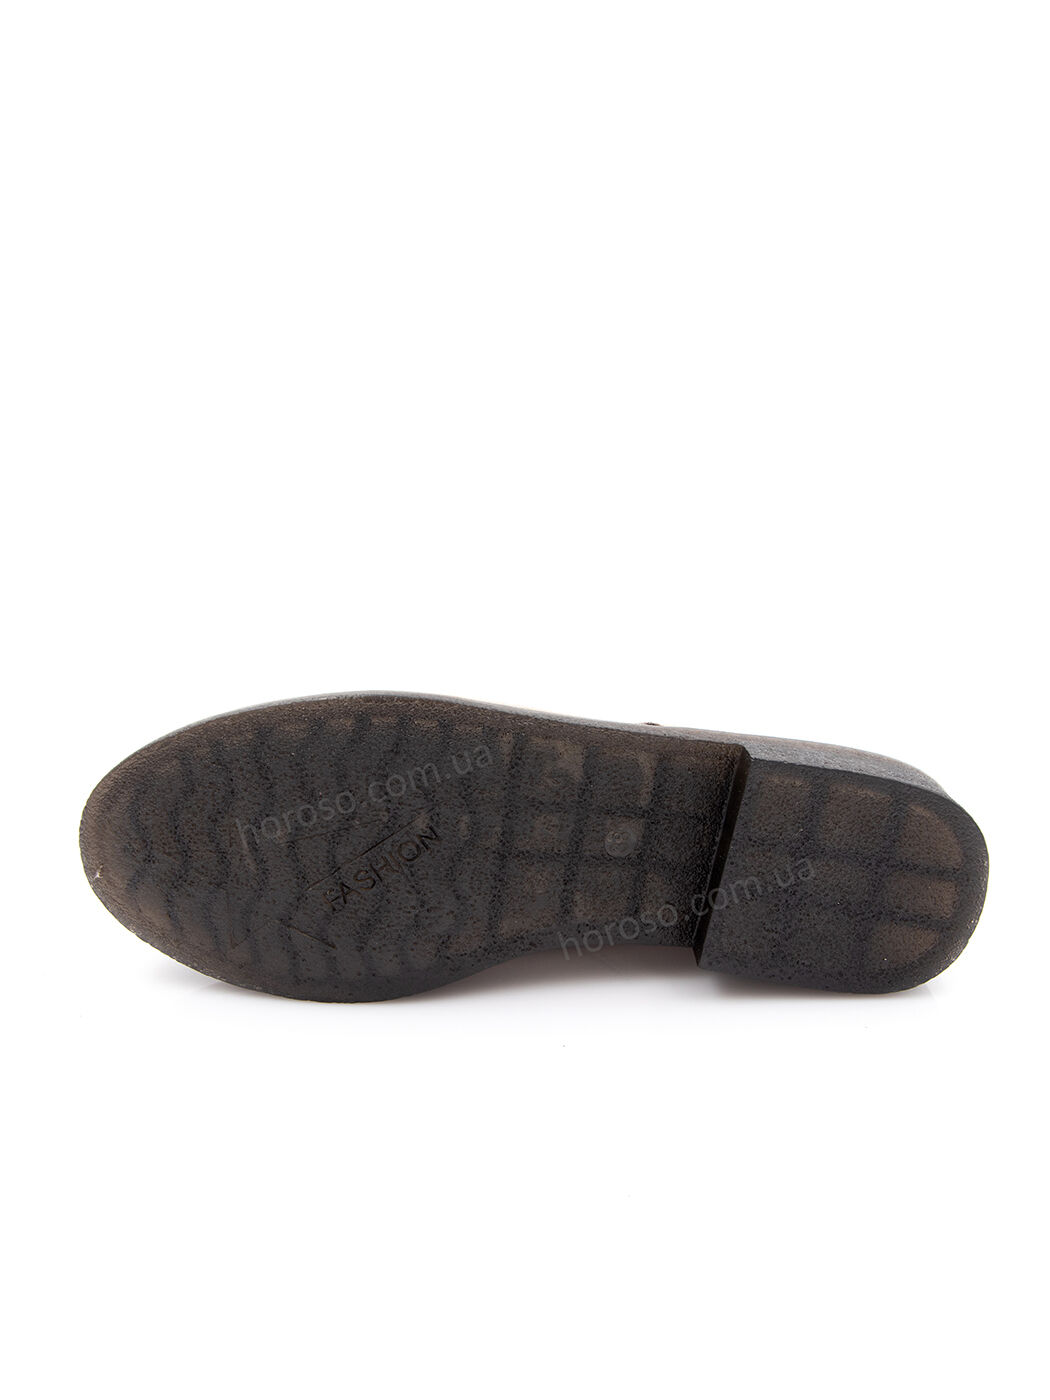 Туфли Oxfords женские серые экозамша каблук устойчивый демисезон 12M вид 1